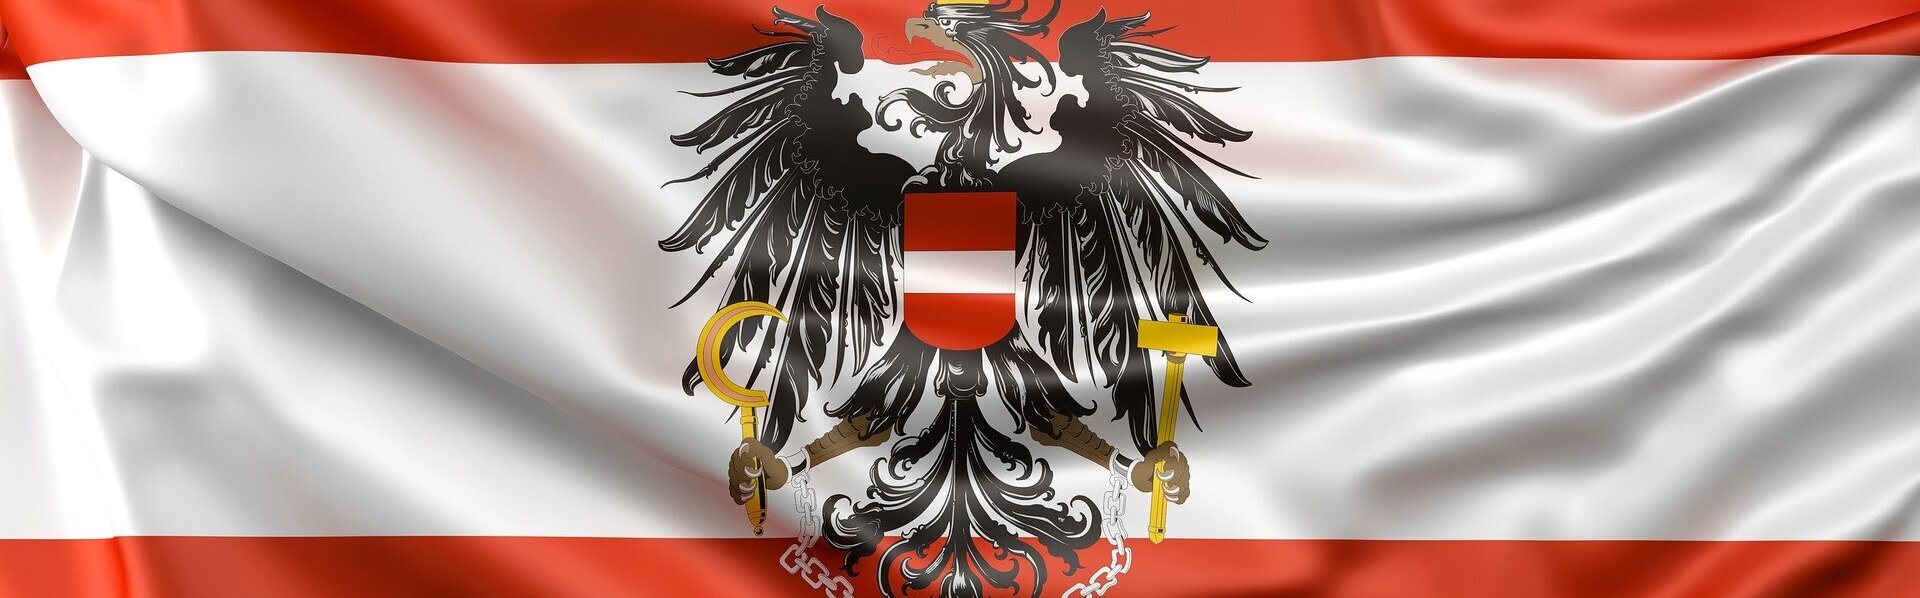 Das Bild zeigt die Flagge Österreichs.